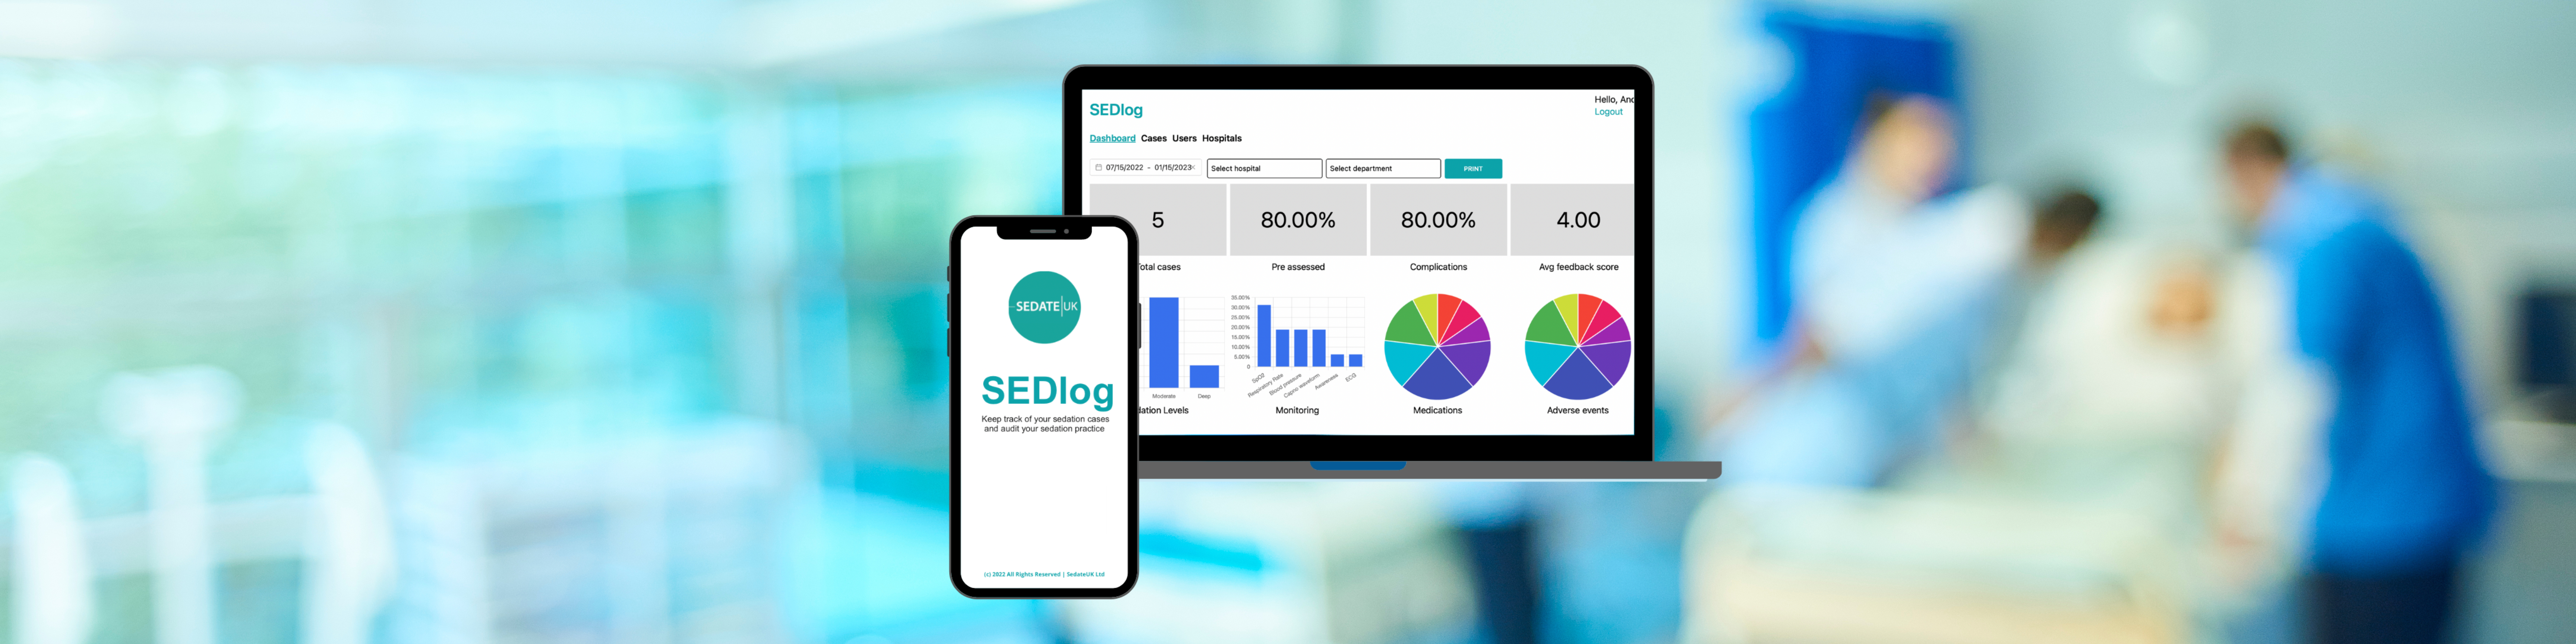 SEDlog App Launch